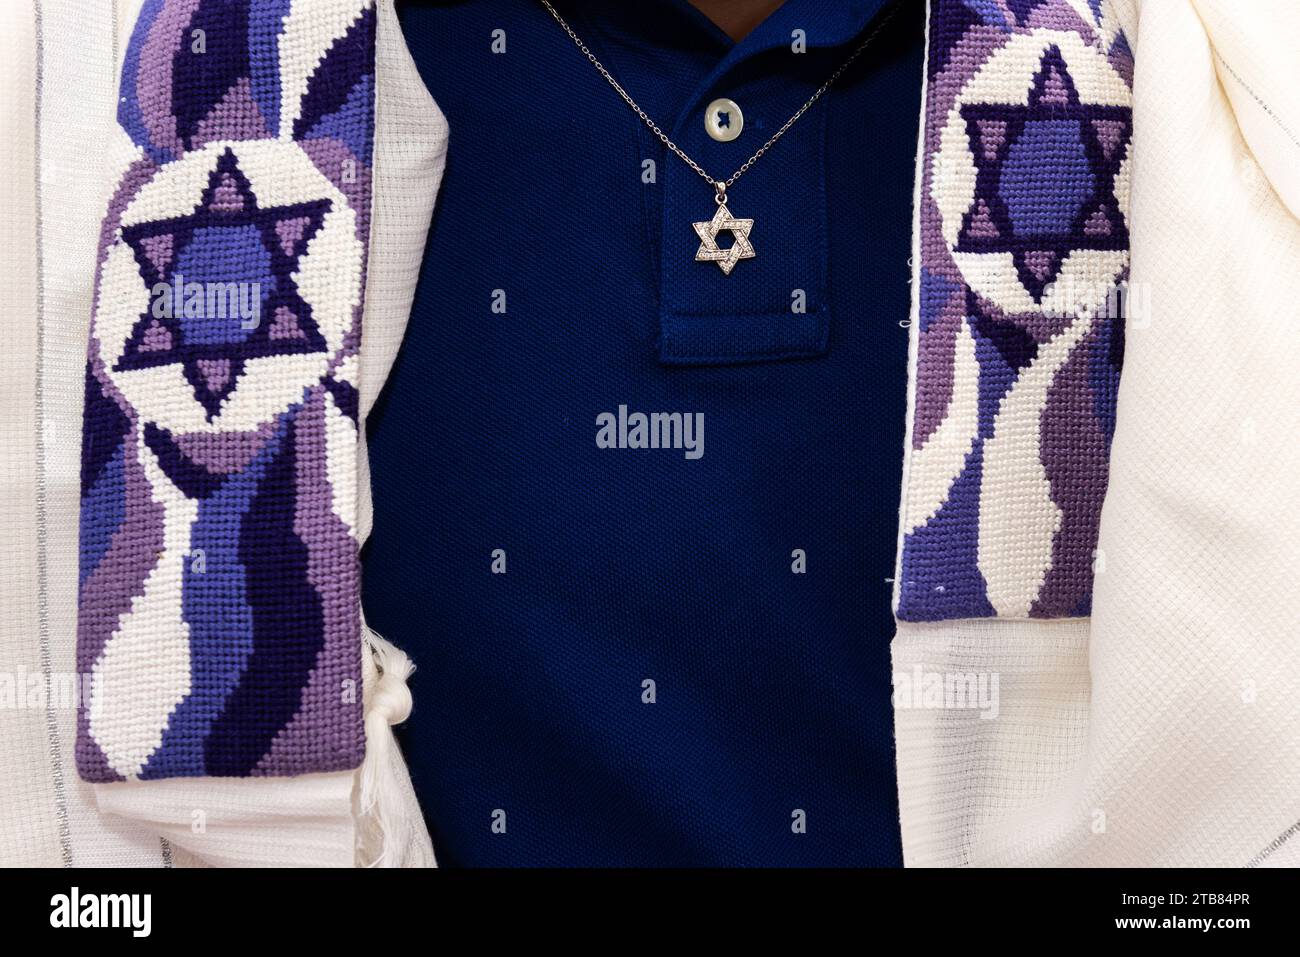 Détail d'un homme juif portant un châle de prière ou de tallit décoré d'étoiles juives et un collier avec un pendentif Magen David en or. Banque D'Images